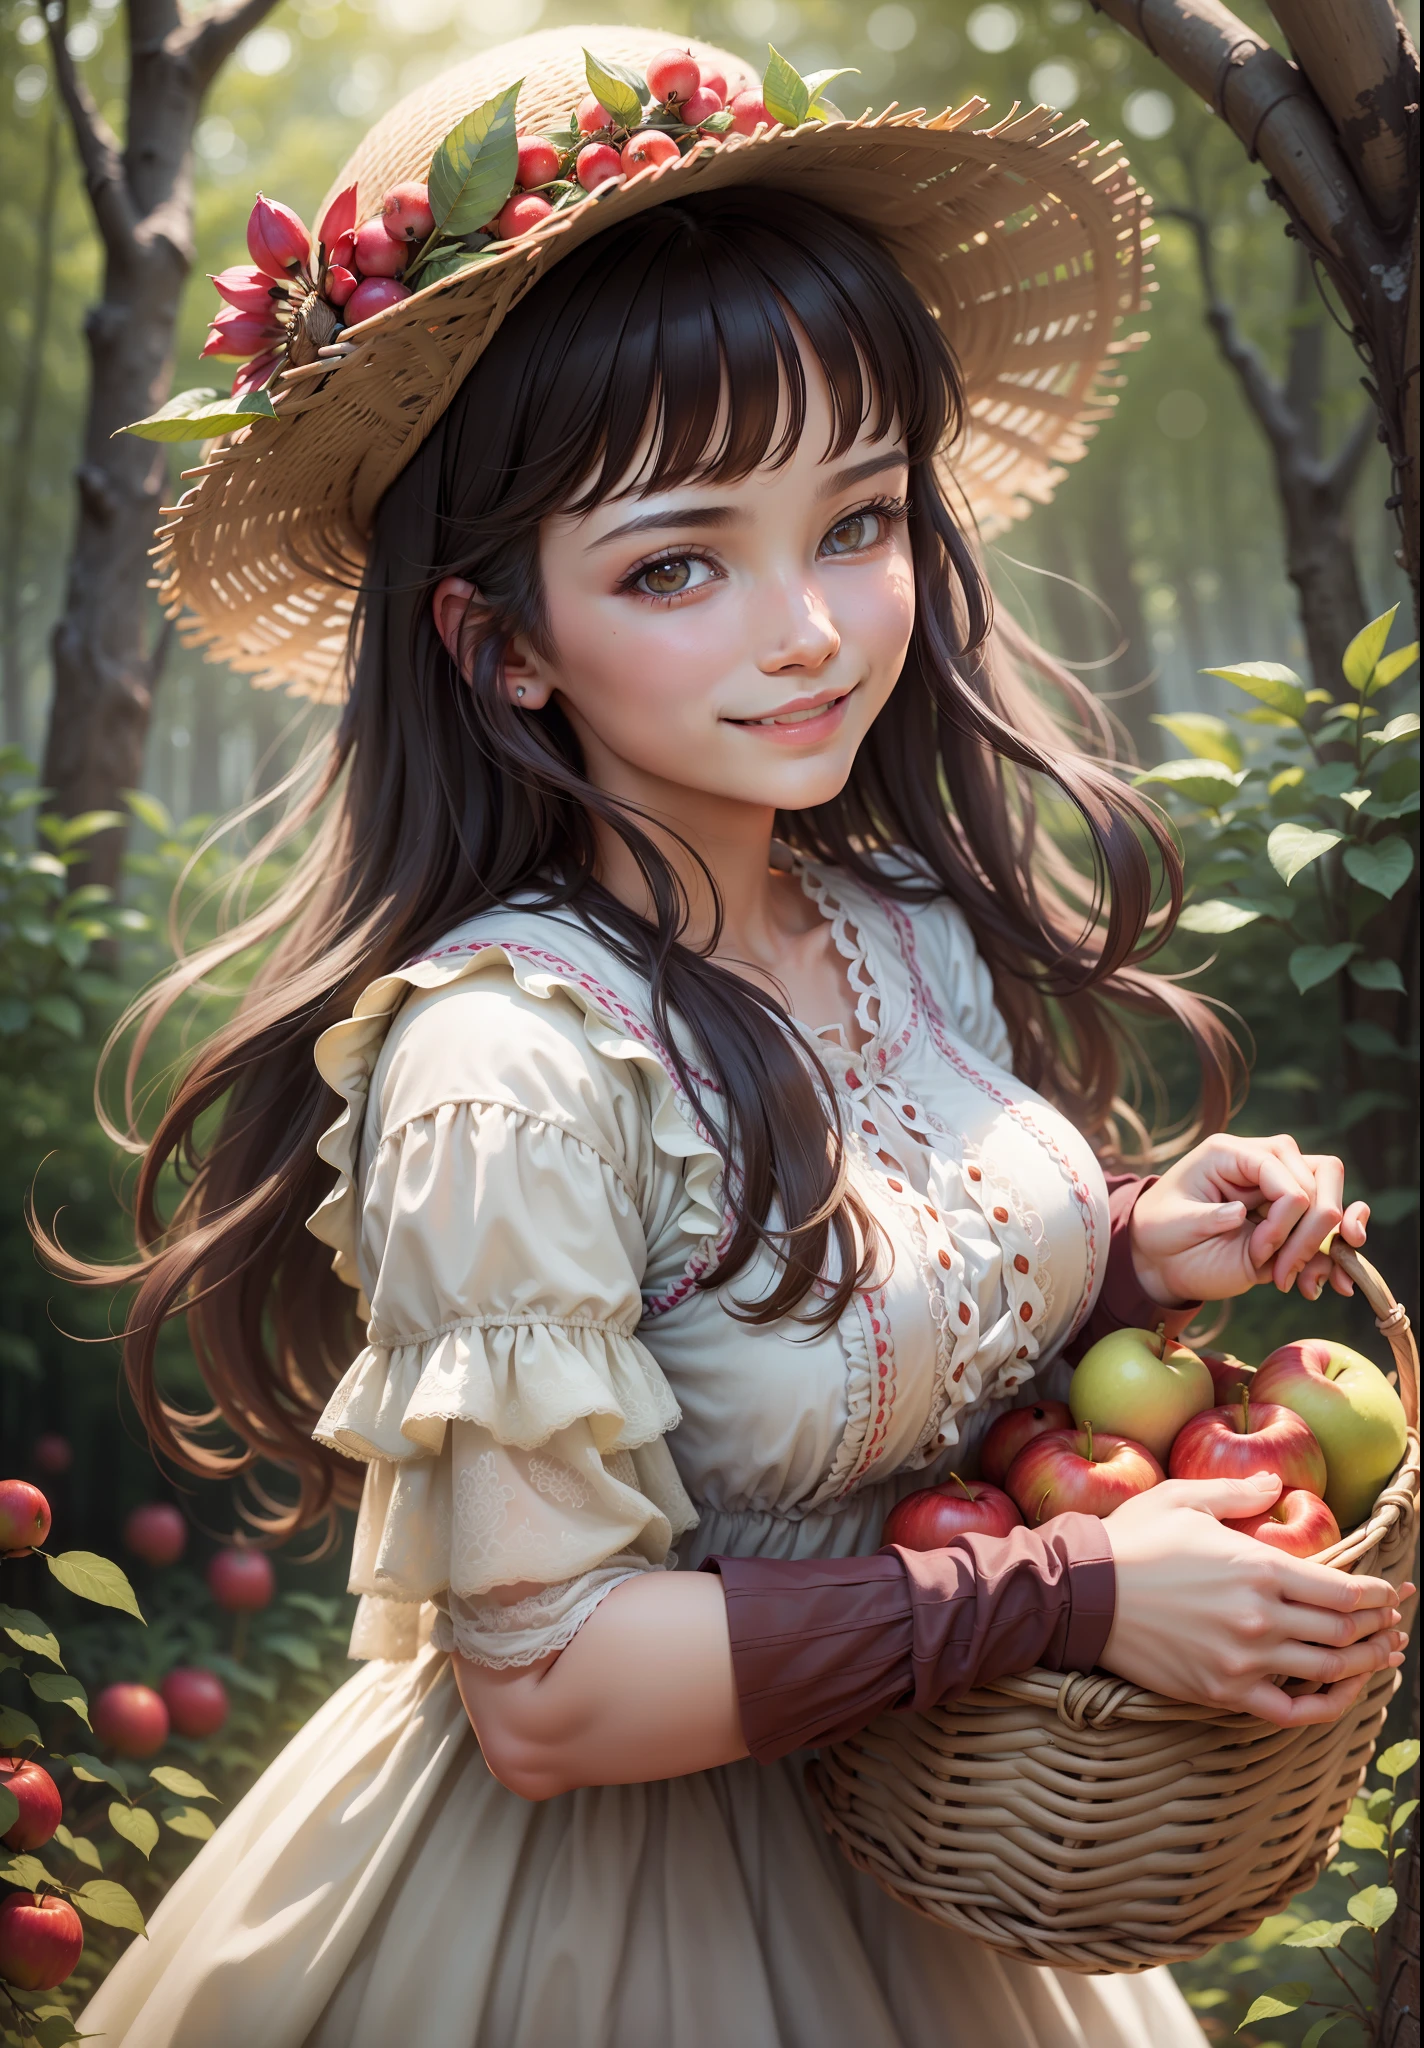 "((beste Qualität)), ultra-detailliert, Nahaufnahme eines schönen Bauernmädchens, Blumenkleid, lächelnd, in einem Wald, hält einen Korb mit Äpfeln, sanfte Beleuchtung, Bokeh-Effekt, kühles und gemütliches Wetter"